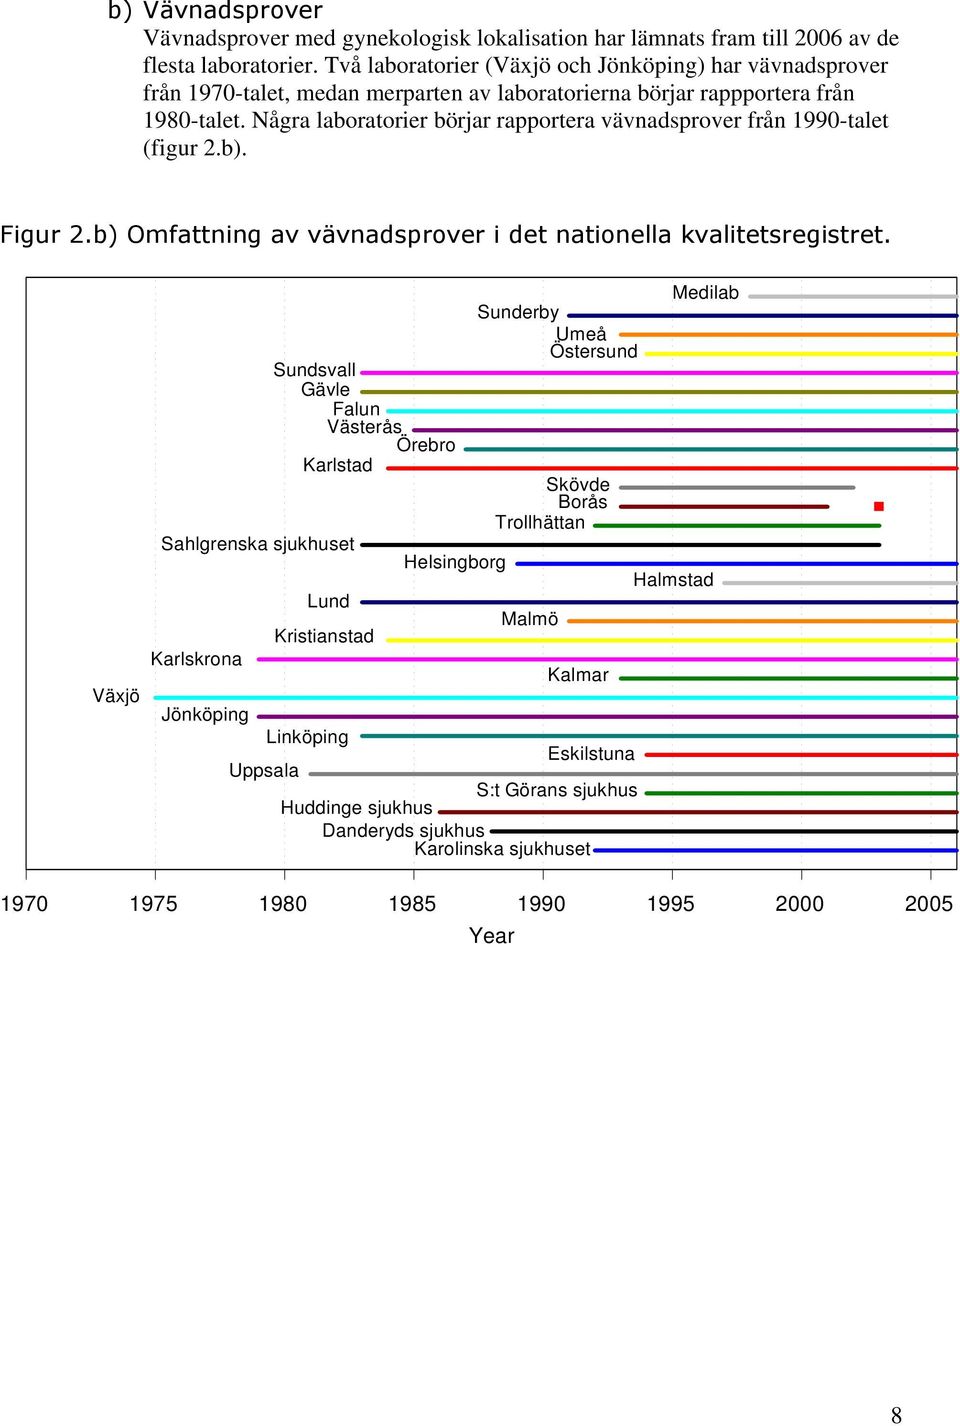 Några laboratorier börjar rapportera vävnadsprover från 1990-talet (figur 2.b). Figur 2.b) Omfattning av vävnadsprover i det nationella kvalitetsregistret.